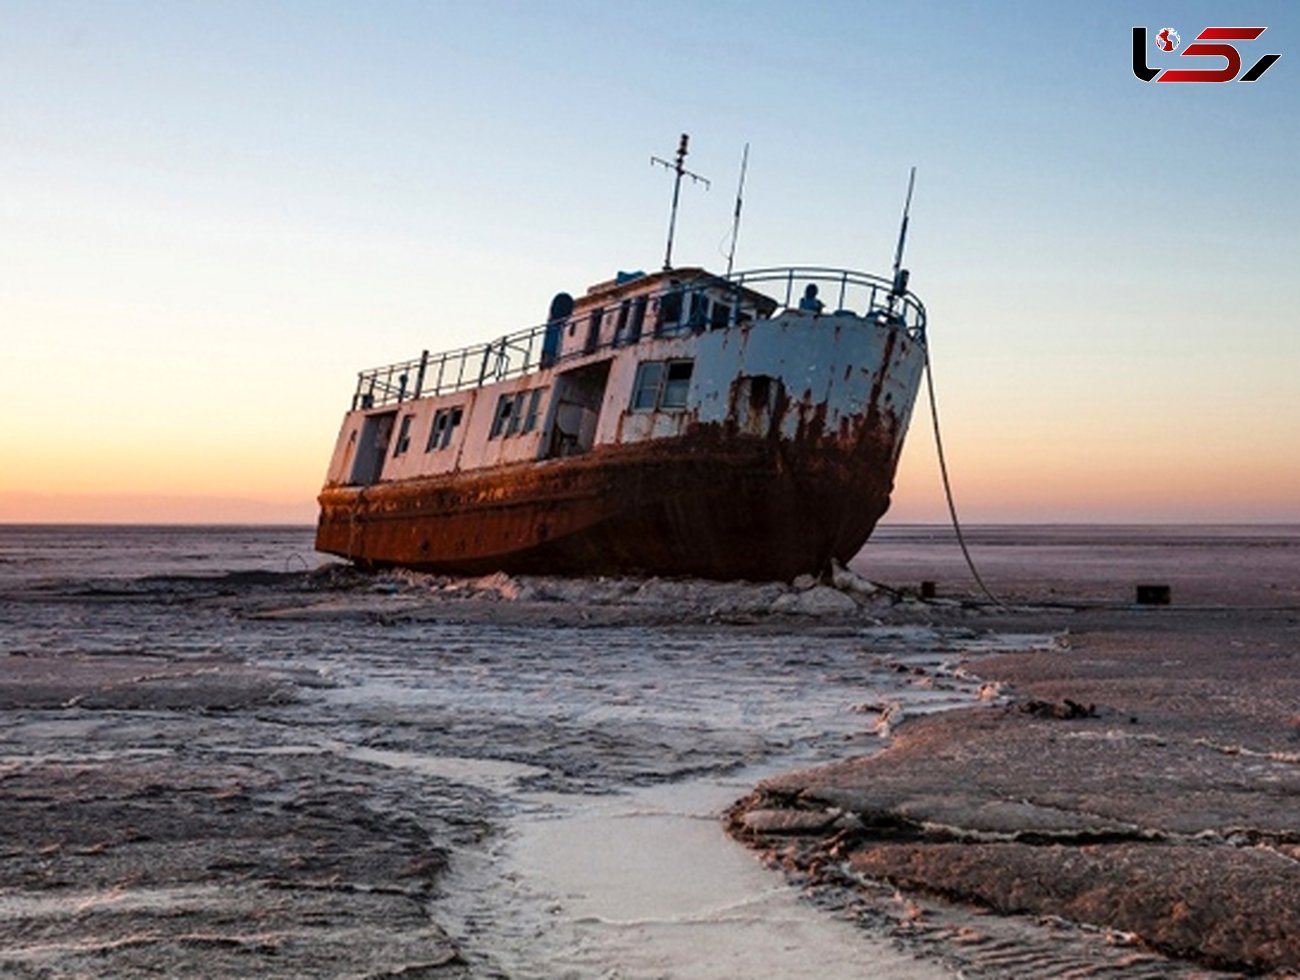 بیش از ۹۵ درصد مساحت دریاچه ارومیه خشک شده است / معاون سازمان محیط زیست: سیاست دولت تکمیل طرح های احیای دریاچه است